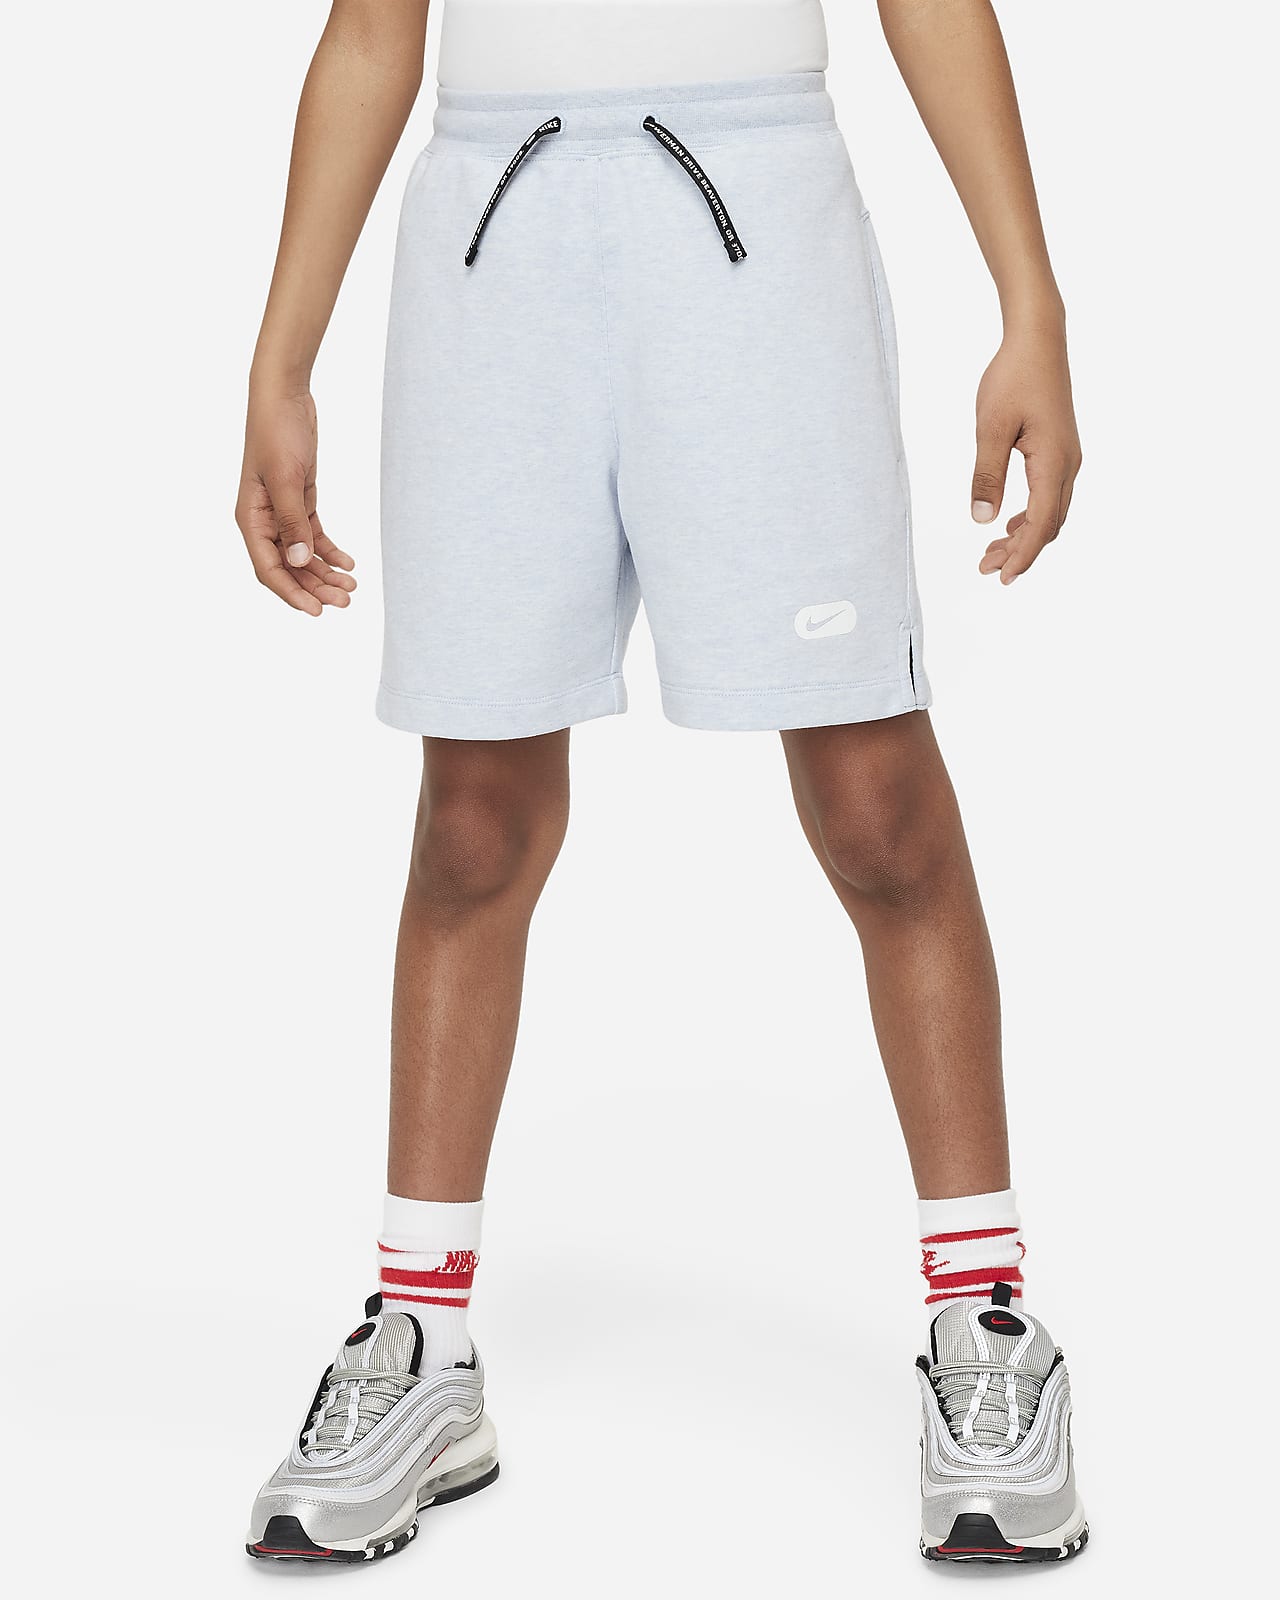 Nike Dri-FIT Athletics Pantalons curts de teixit Fleece d'entrenament - Nen